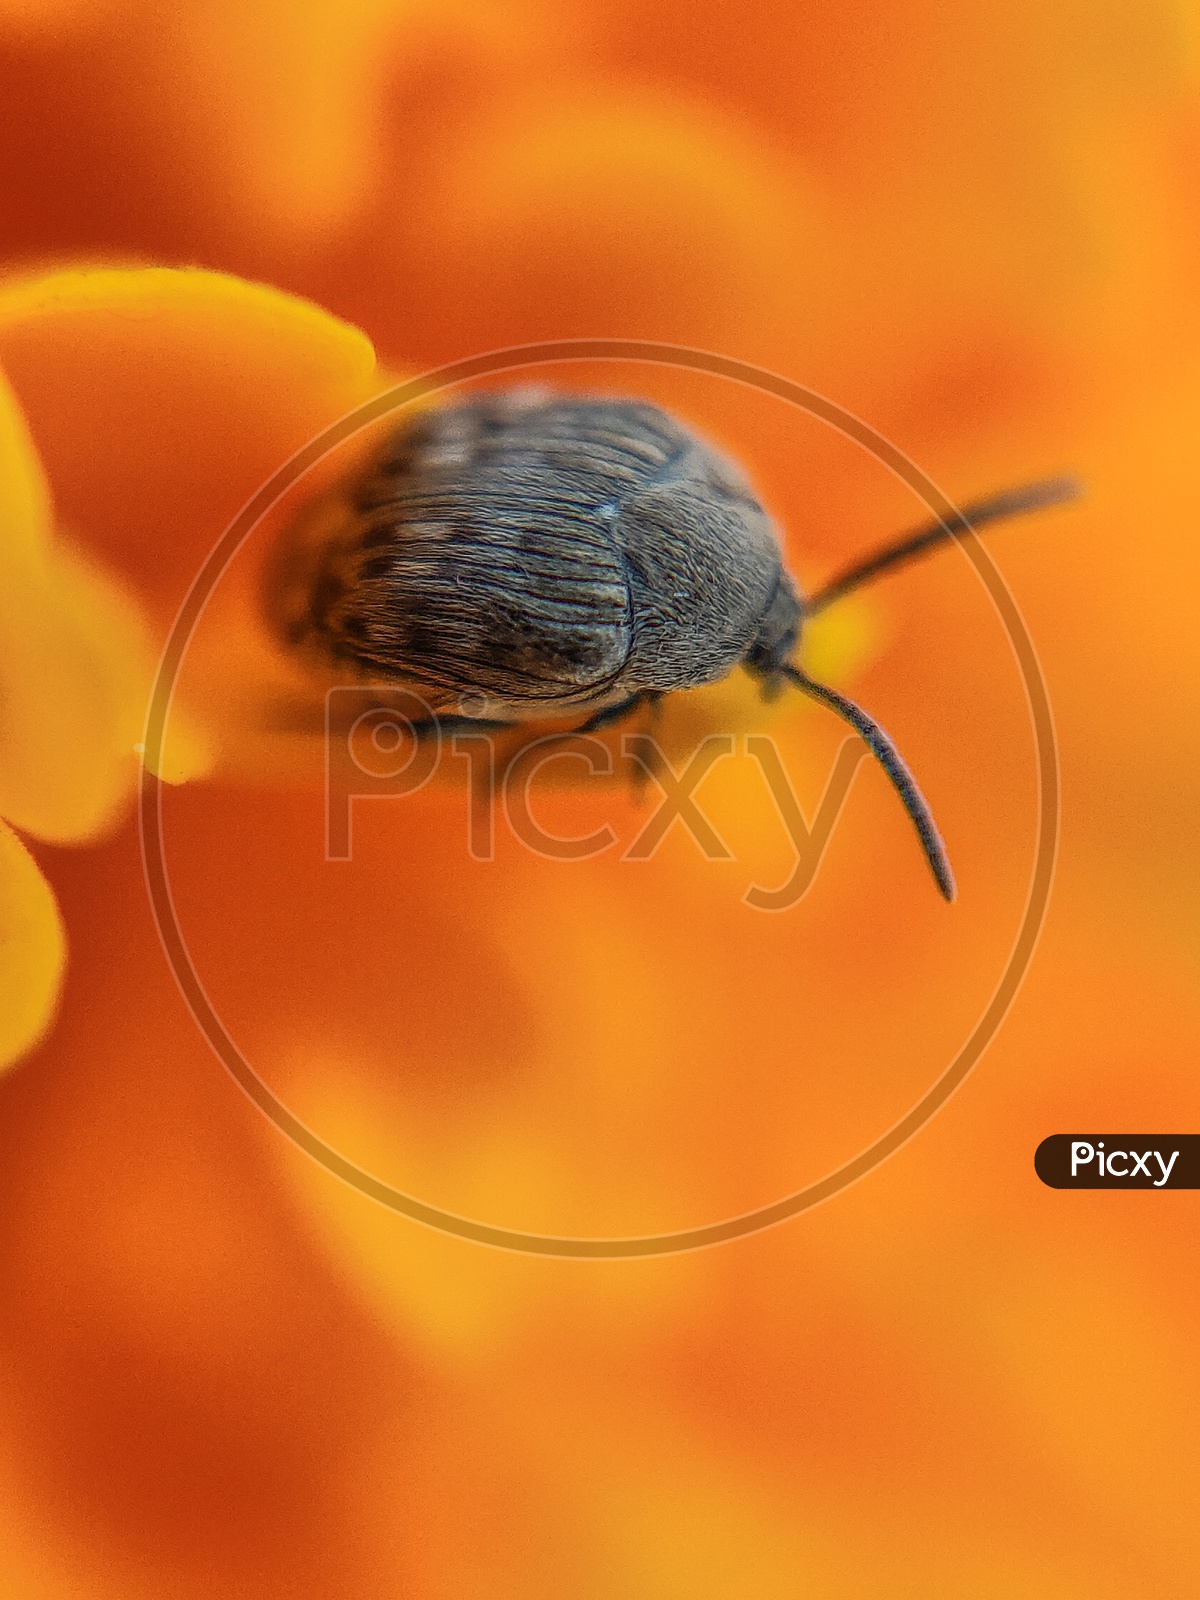 Broom Seed Beetle Bug